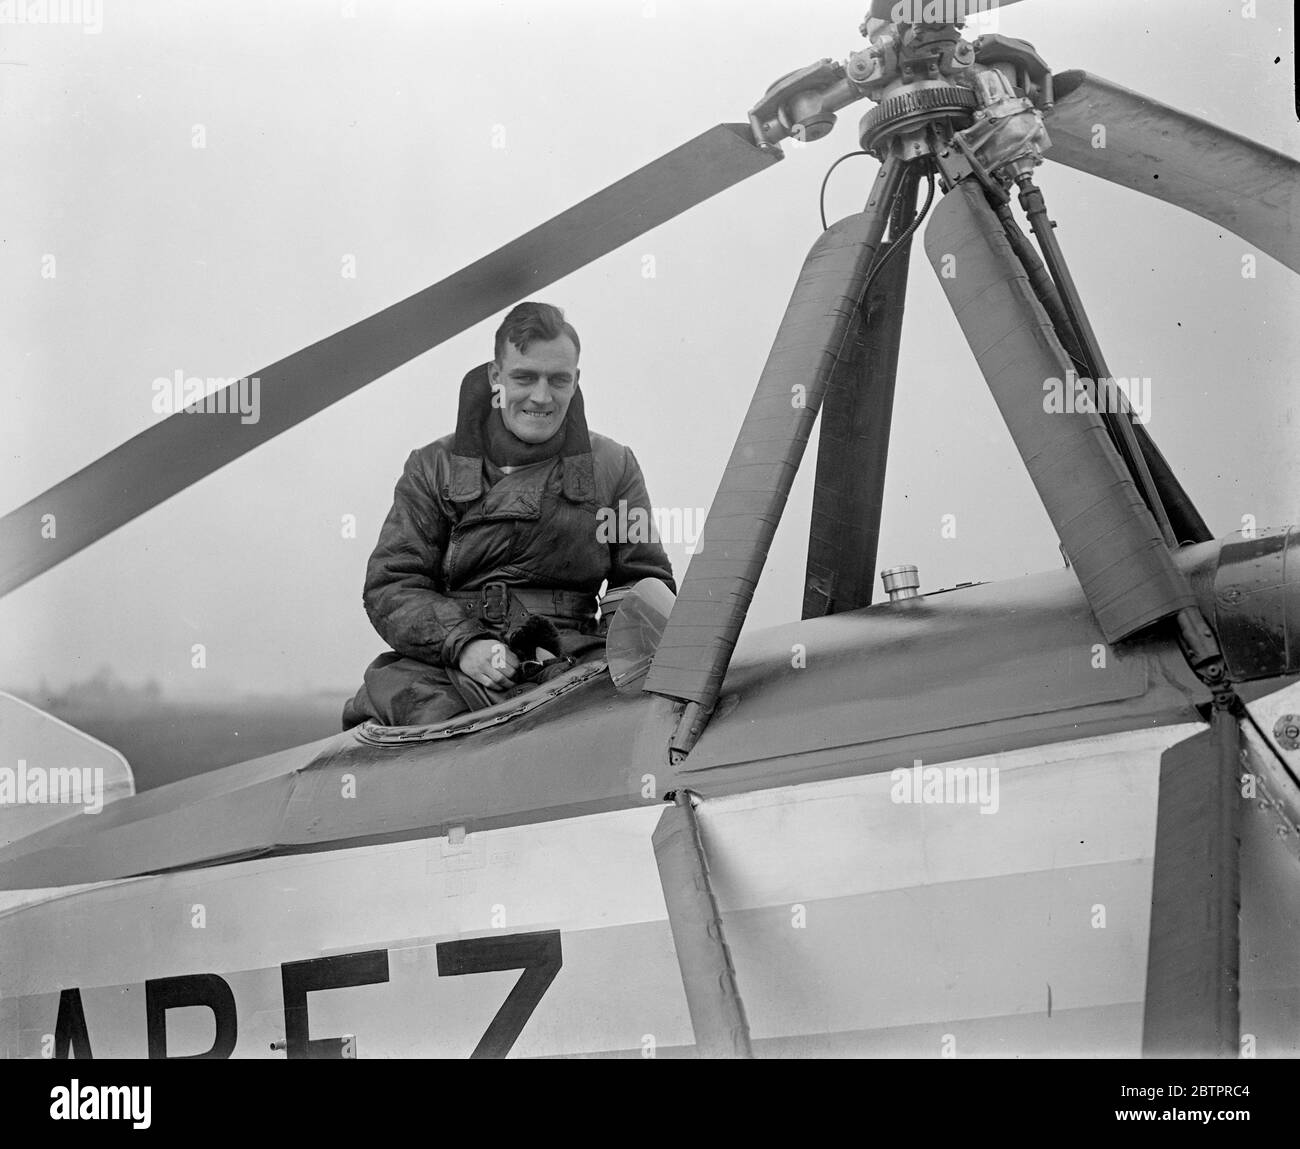 Par Autogiro au Cap. Monsieur J. N. Young (ex-Royal Air Force BFix ce texte pilote) a l'intention de voler en Afrique du Sud dans un auto-giro. 19 avril 1932 Banque D'Images